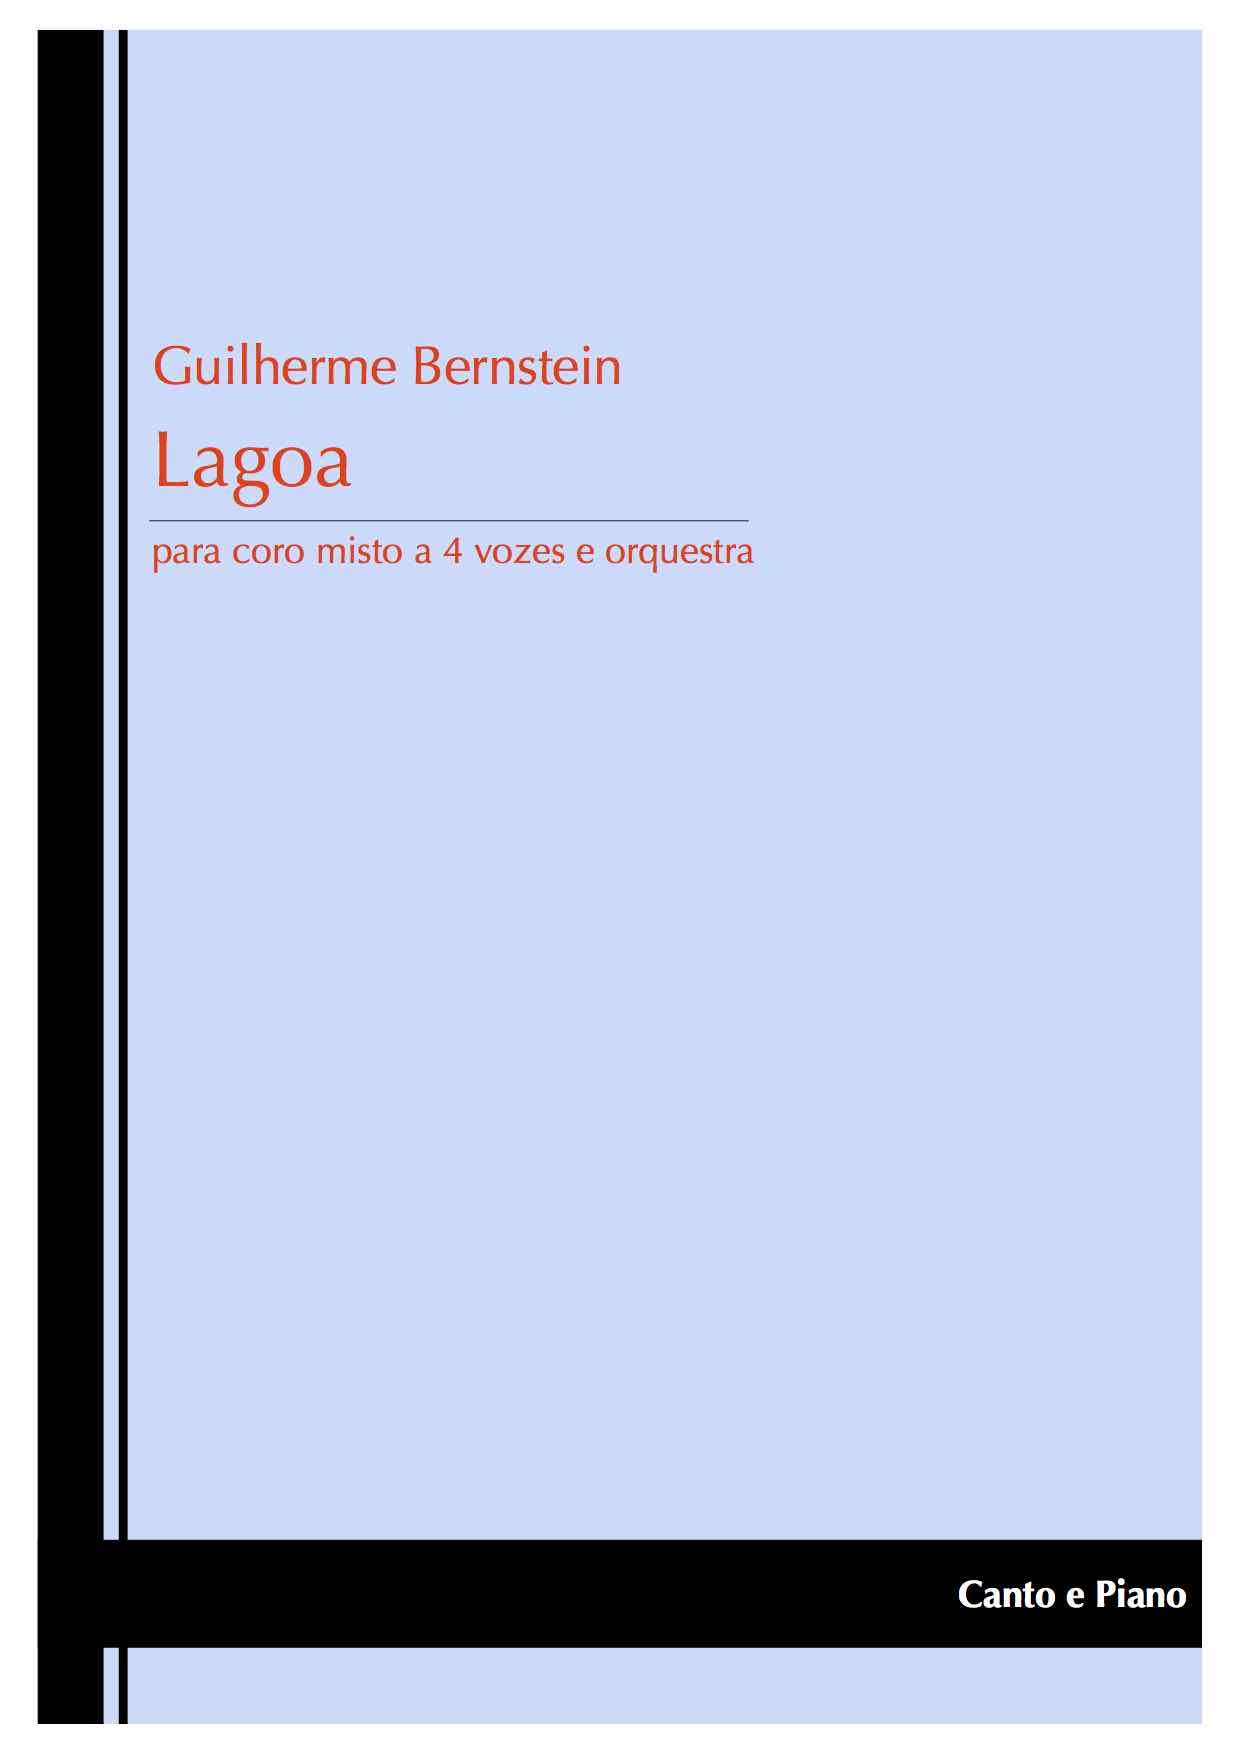 Lagoa - sample cover